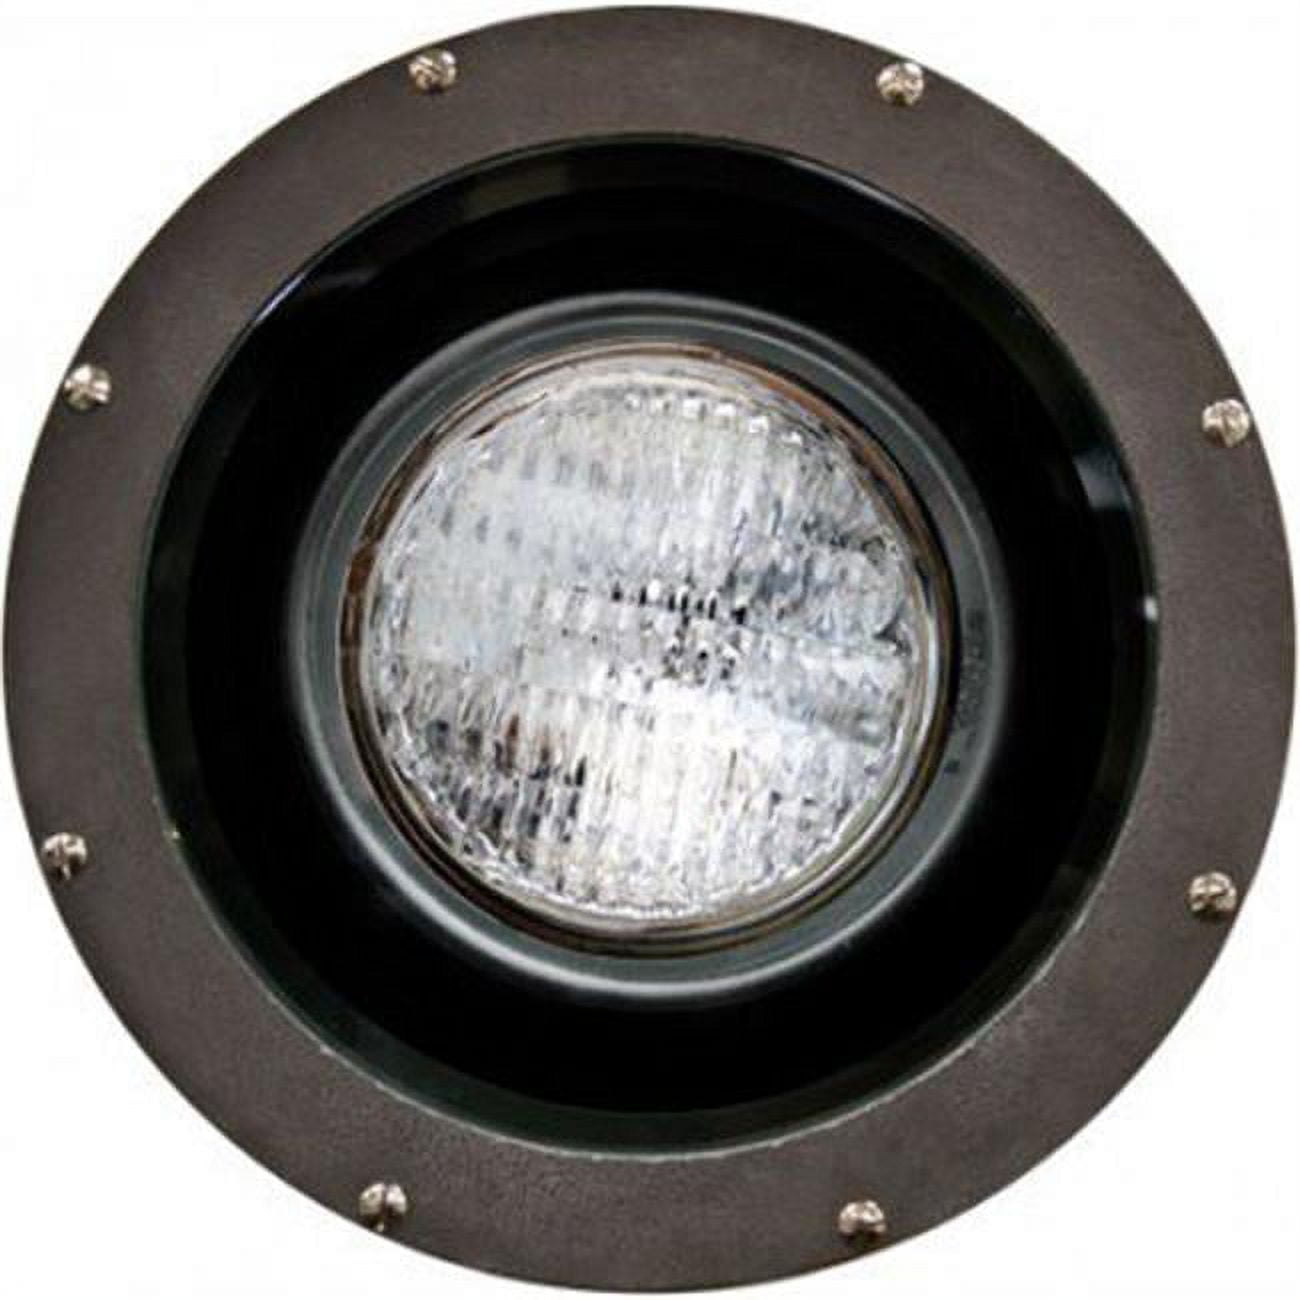 Picture of Dabmar Lighting FG4300-LED18-S 18 watt Spot PAR38 LED Fiberglass Well Light, Bronze - 120V